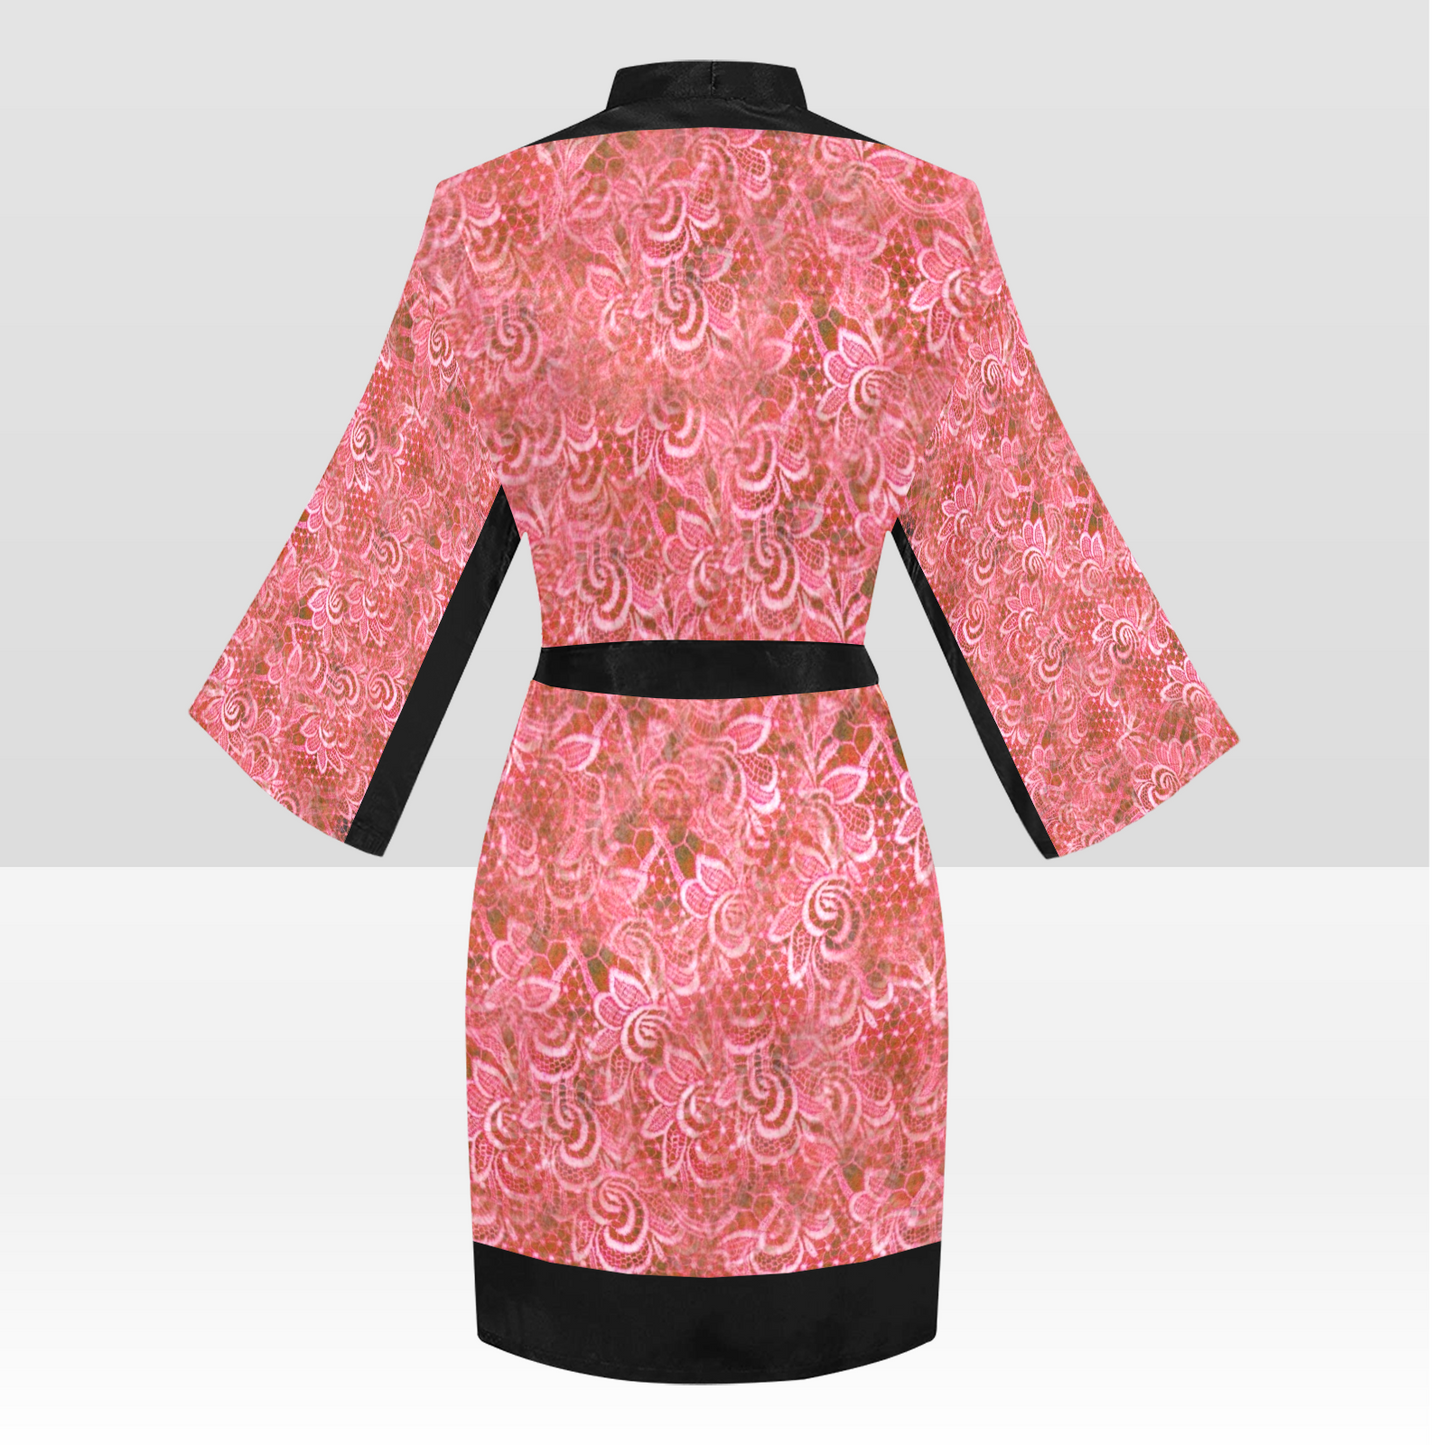 Victorian Lace Kimono Robe, Black or White Trim, Sizes XS to 2XL, Design 33